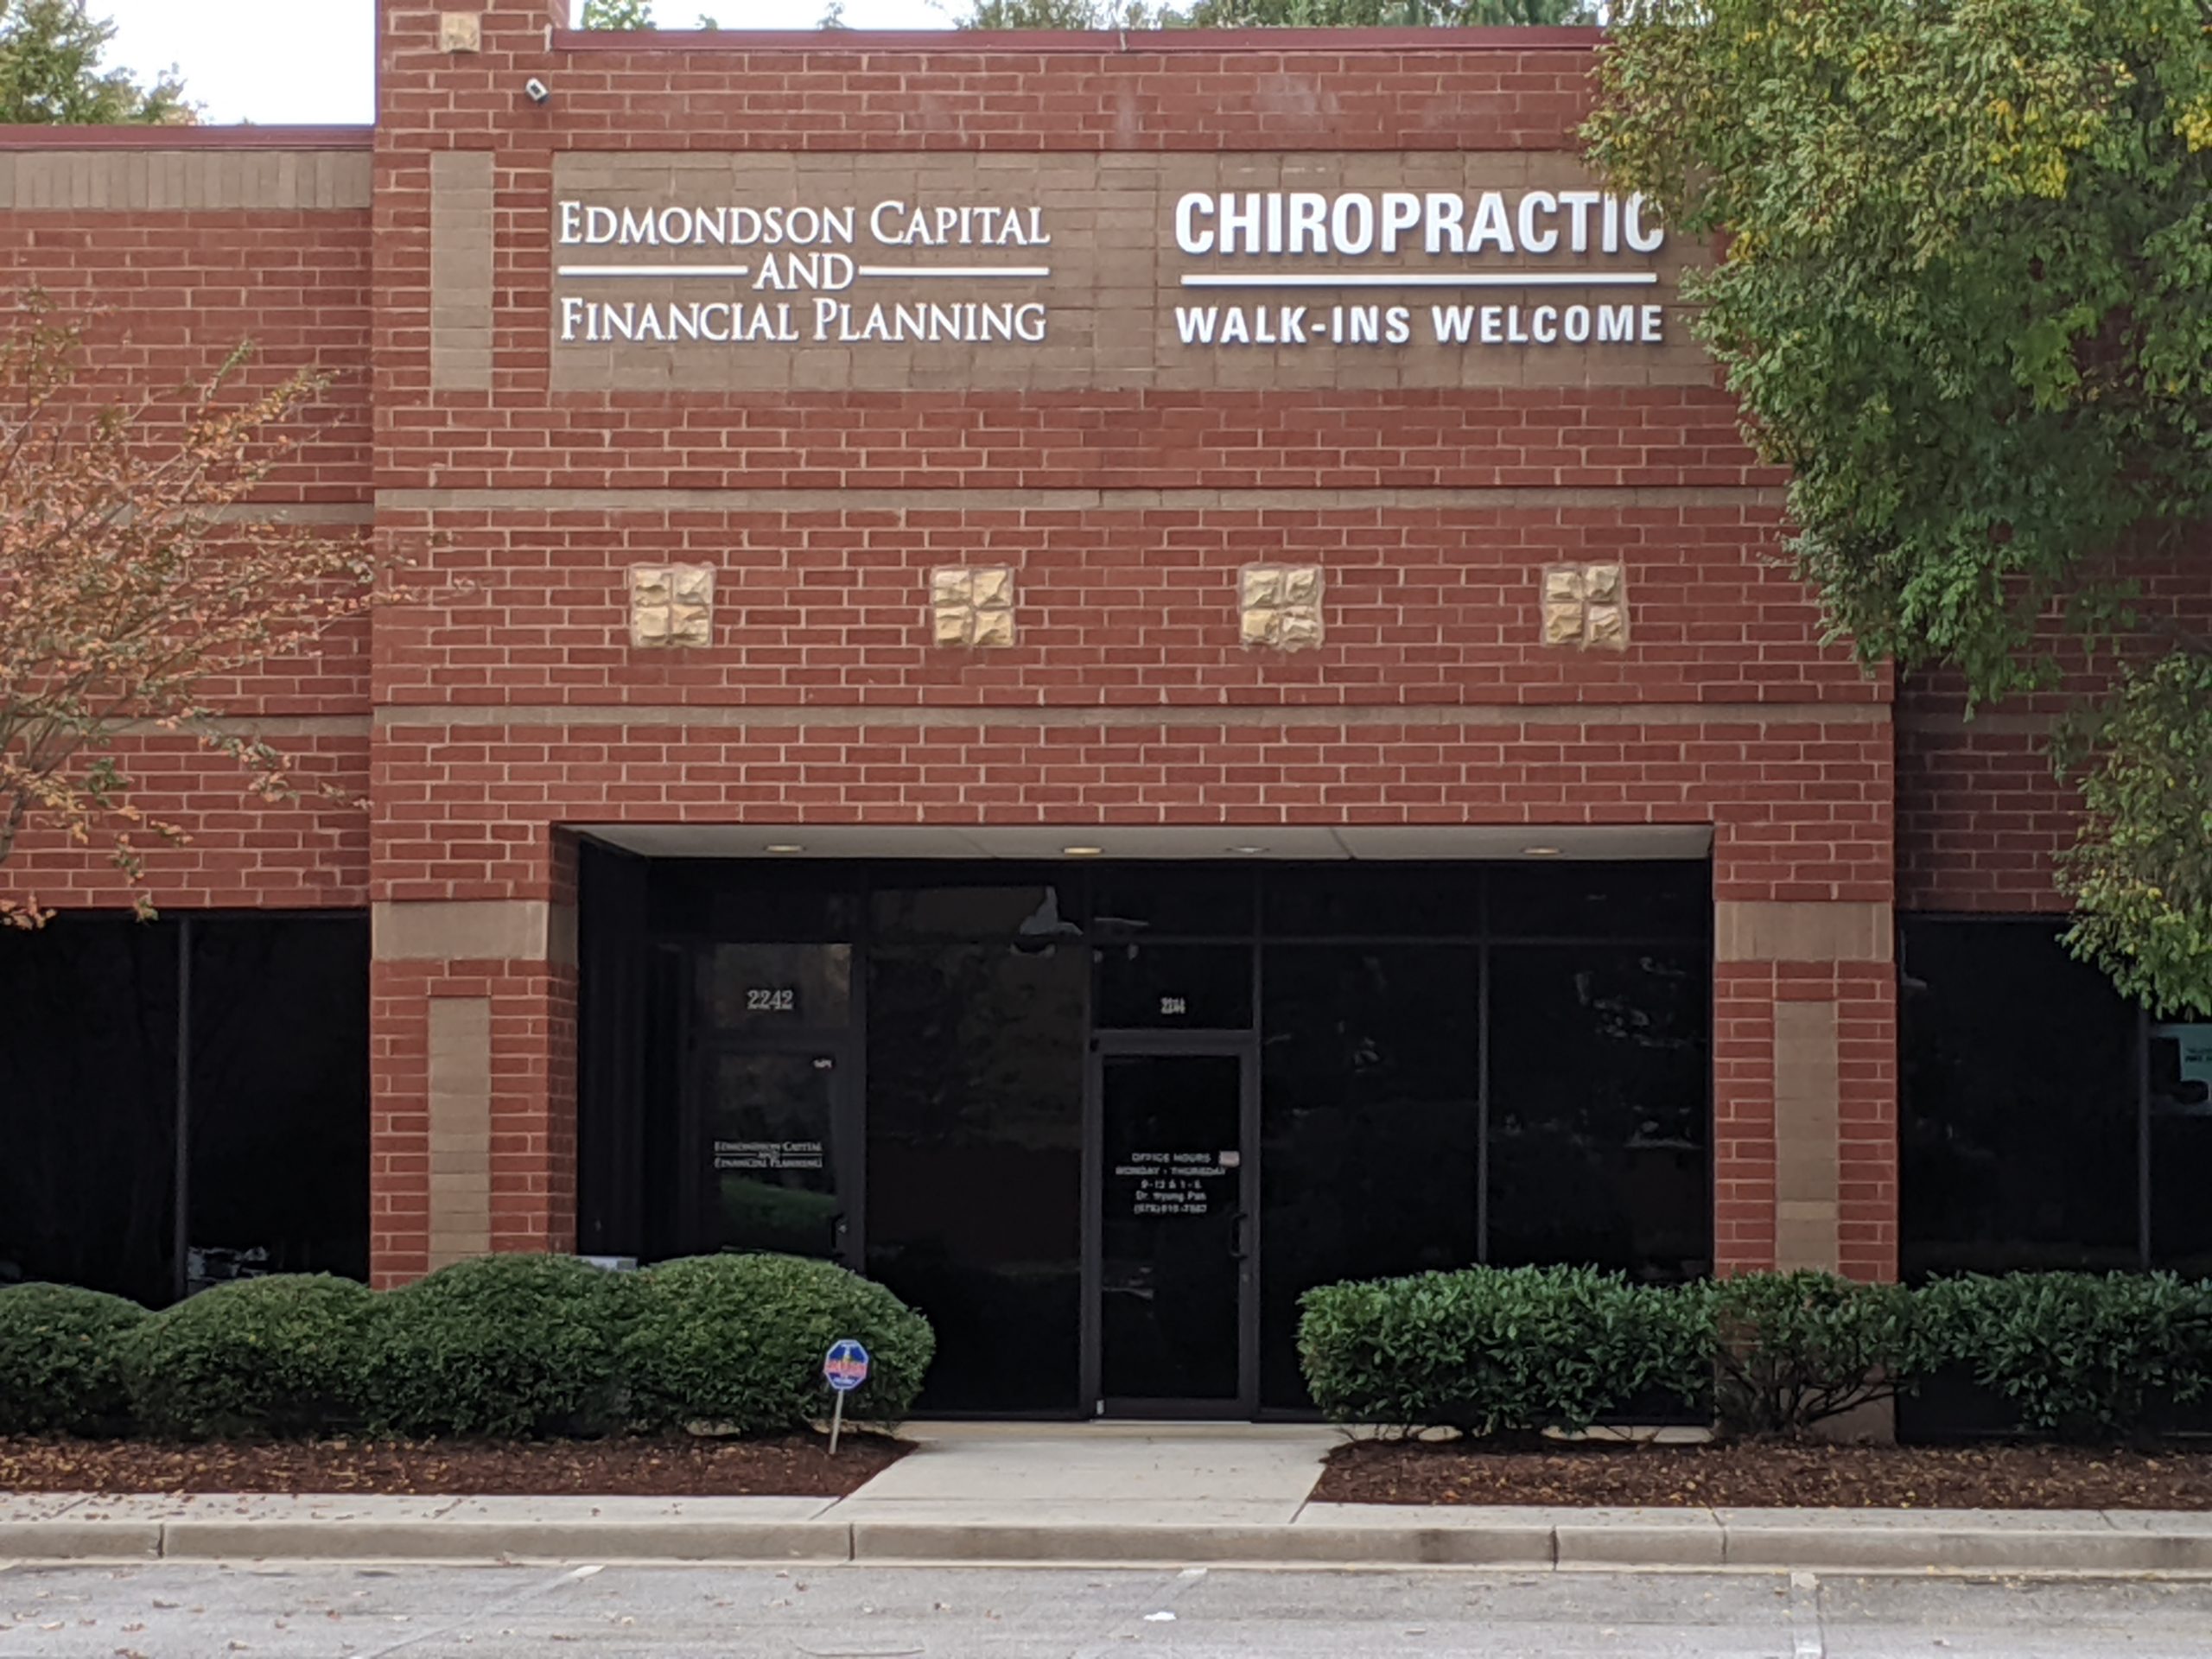 Chiropractic Plus's building